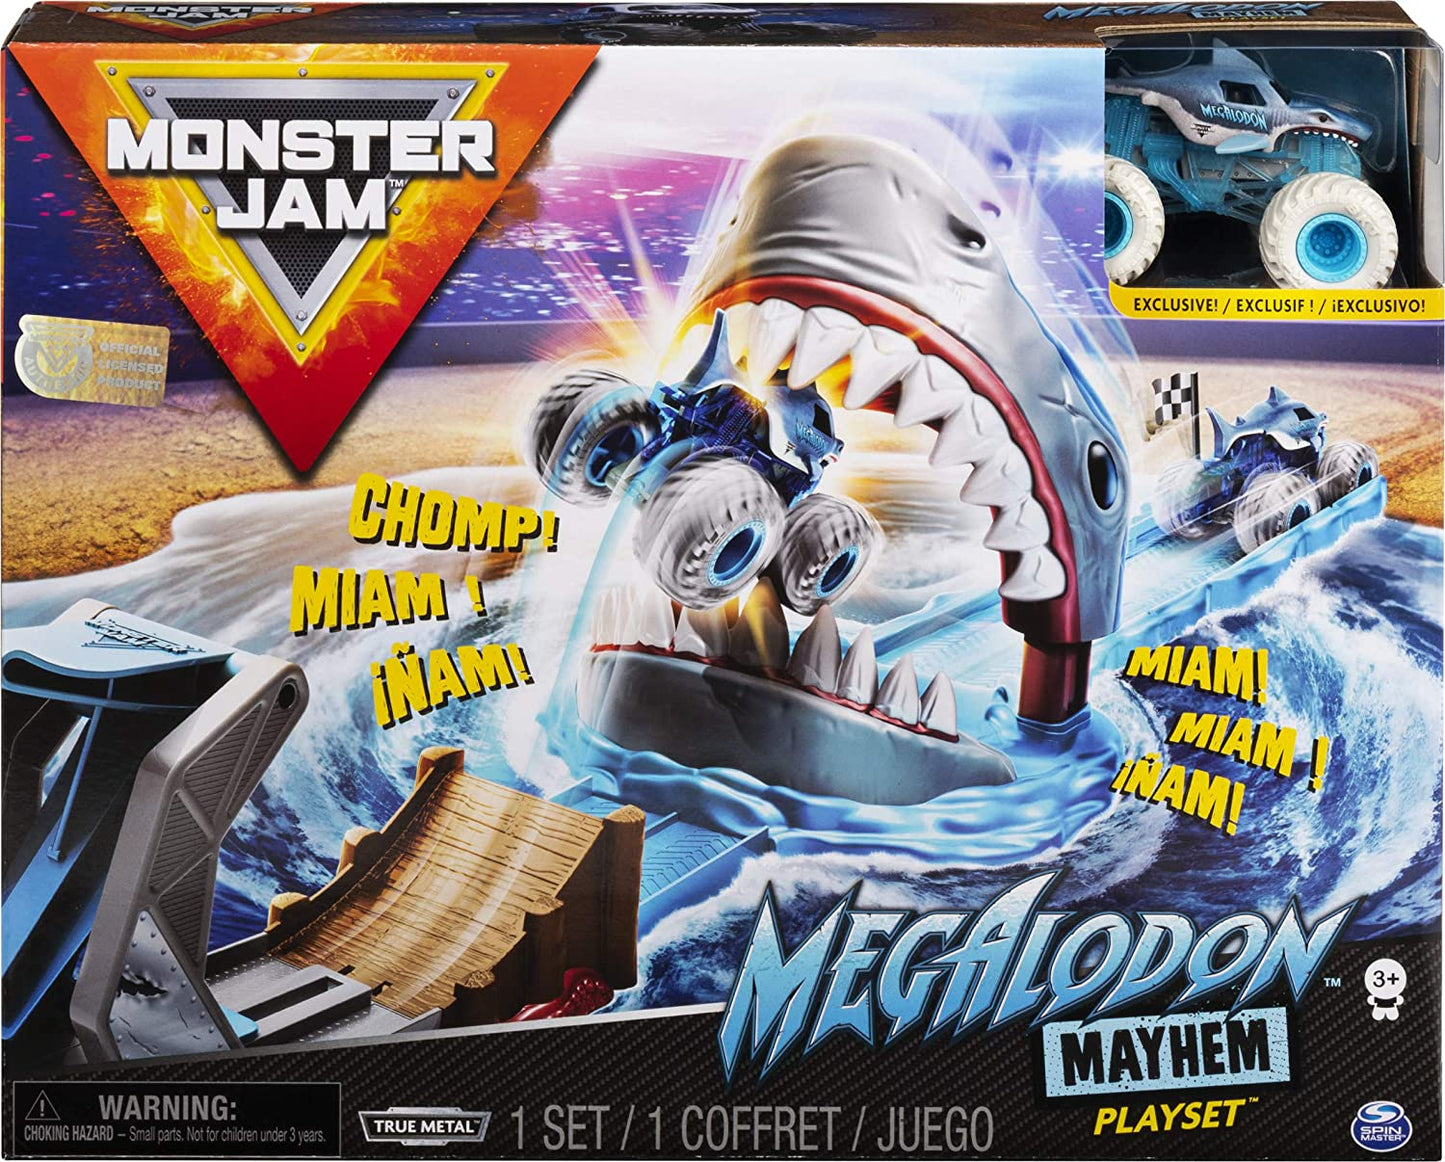 Monster Jam 1:64 Basic Stunt Playset Assortment - Shark Attack